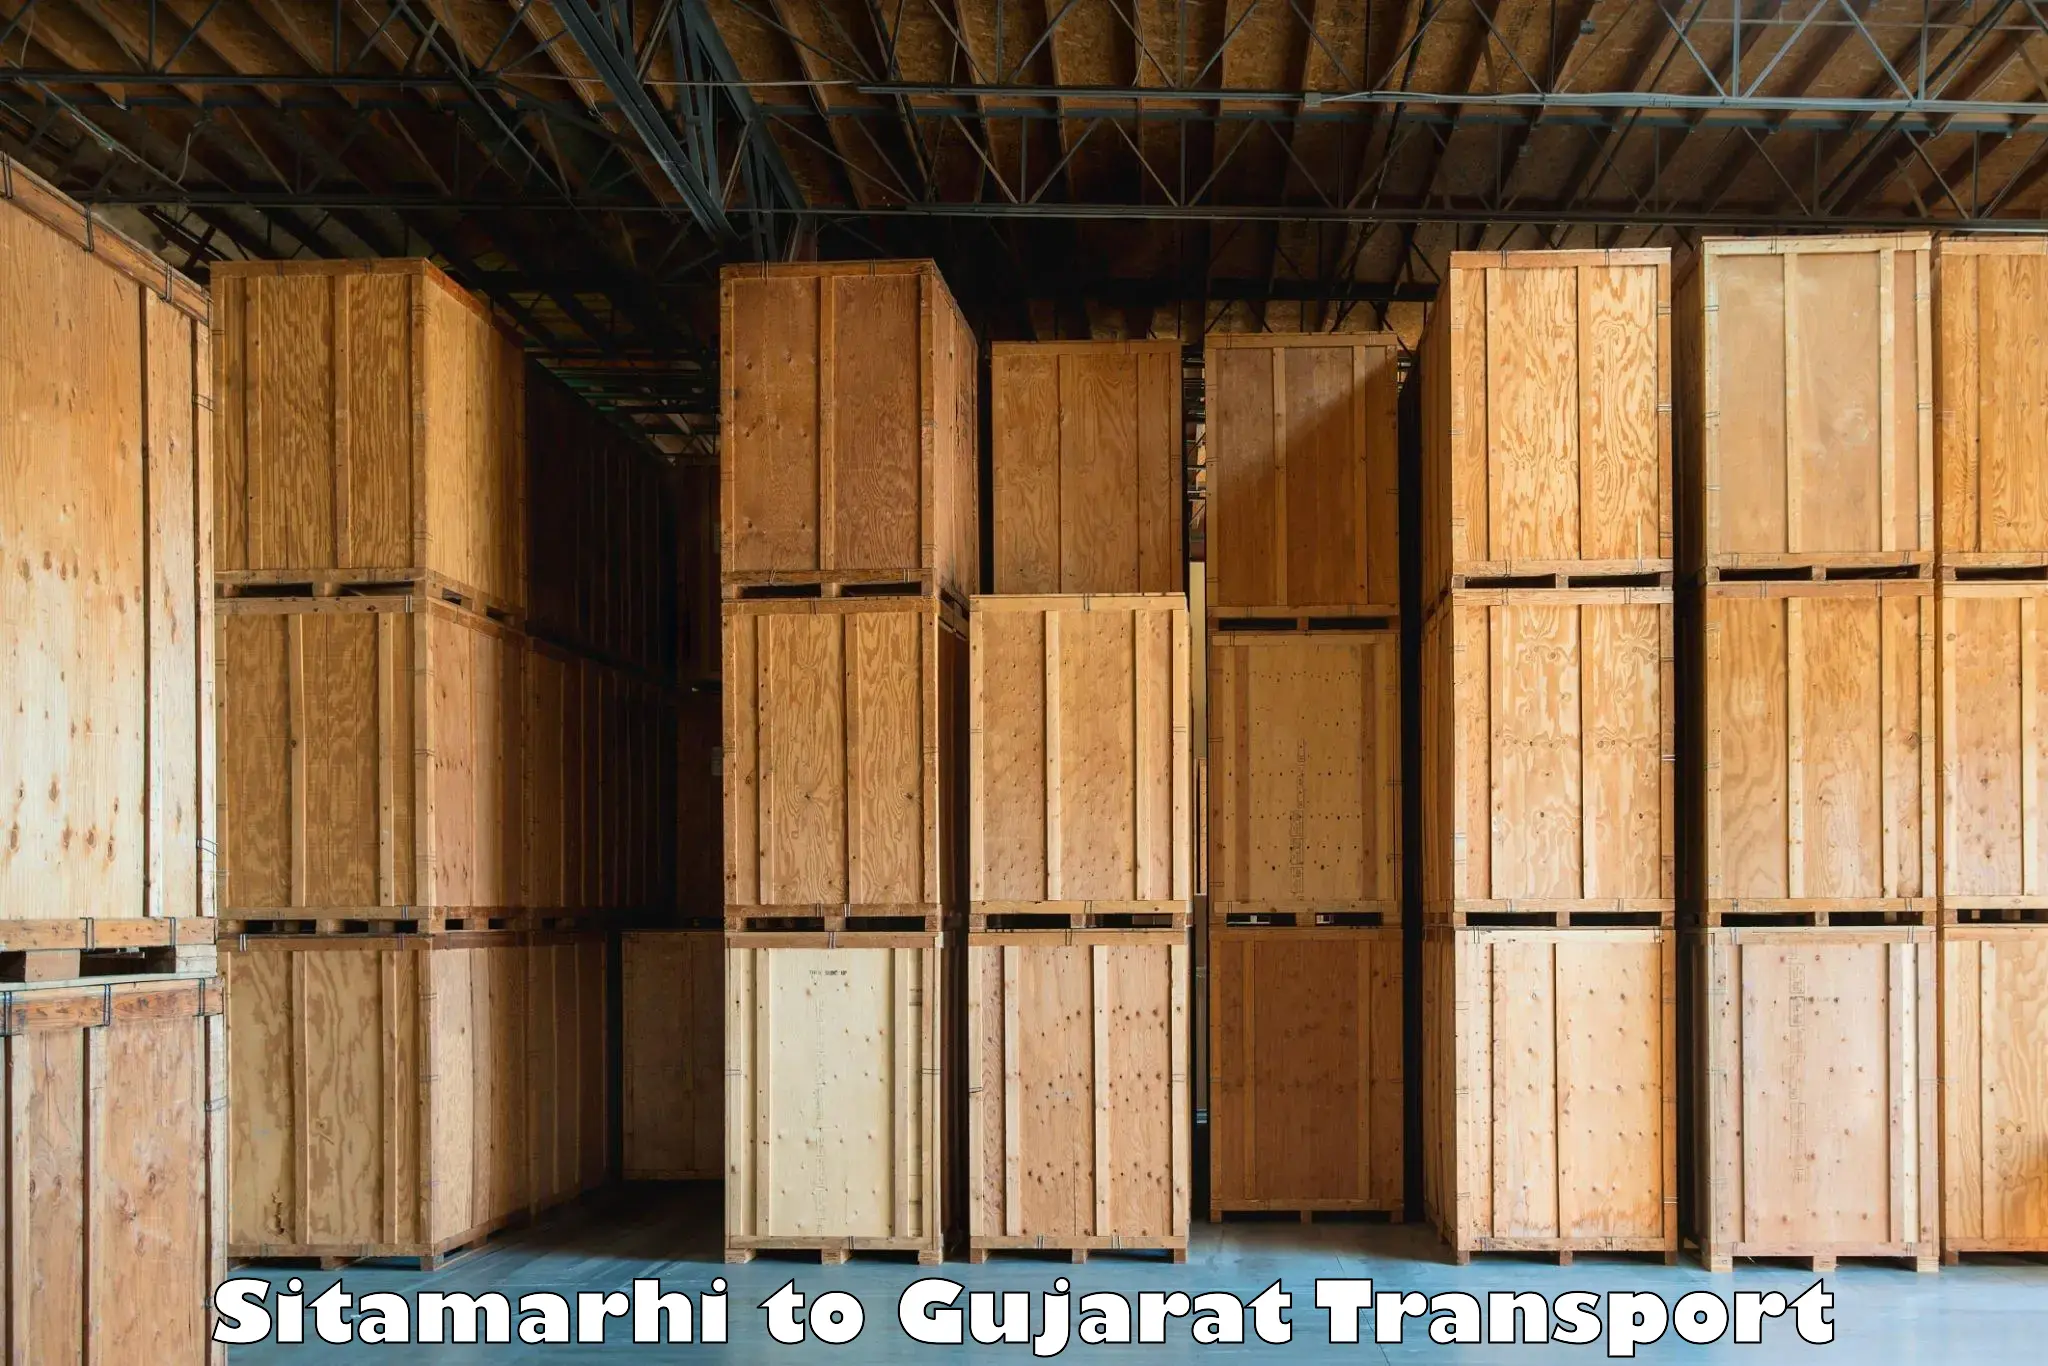 Nearest transport service Sitamarhi to Jambusar